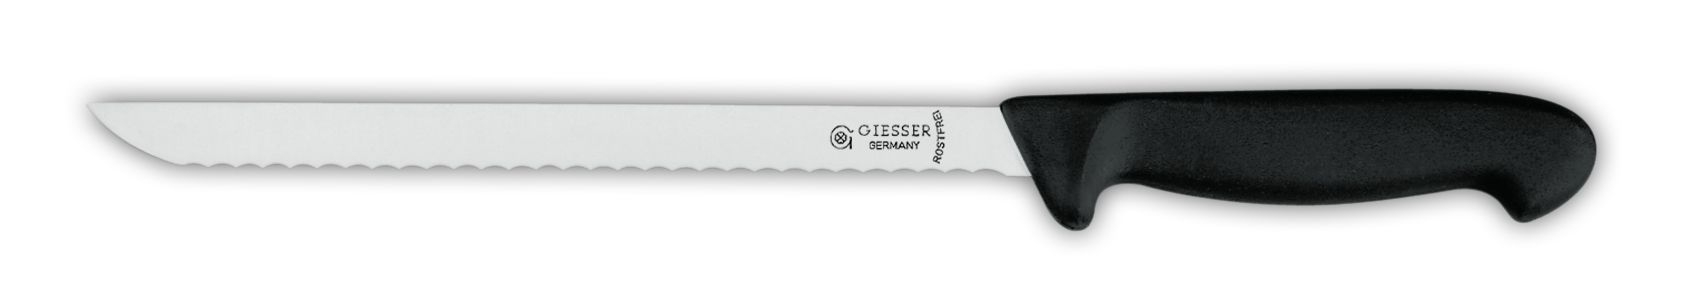 Нож для колбасных изделий 7965w, 21 см,  черная рукоятка